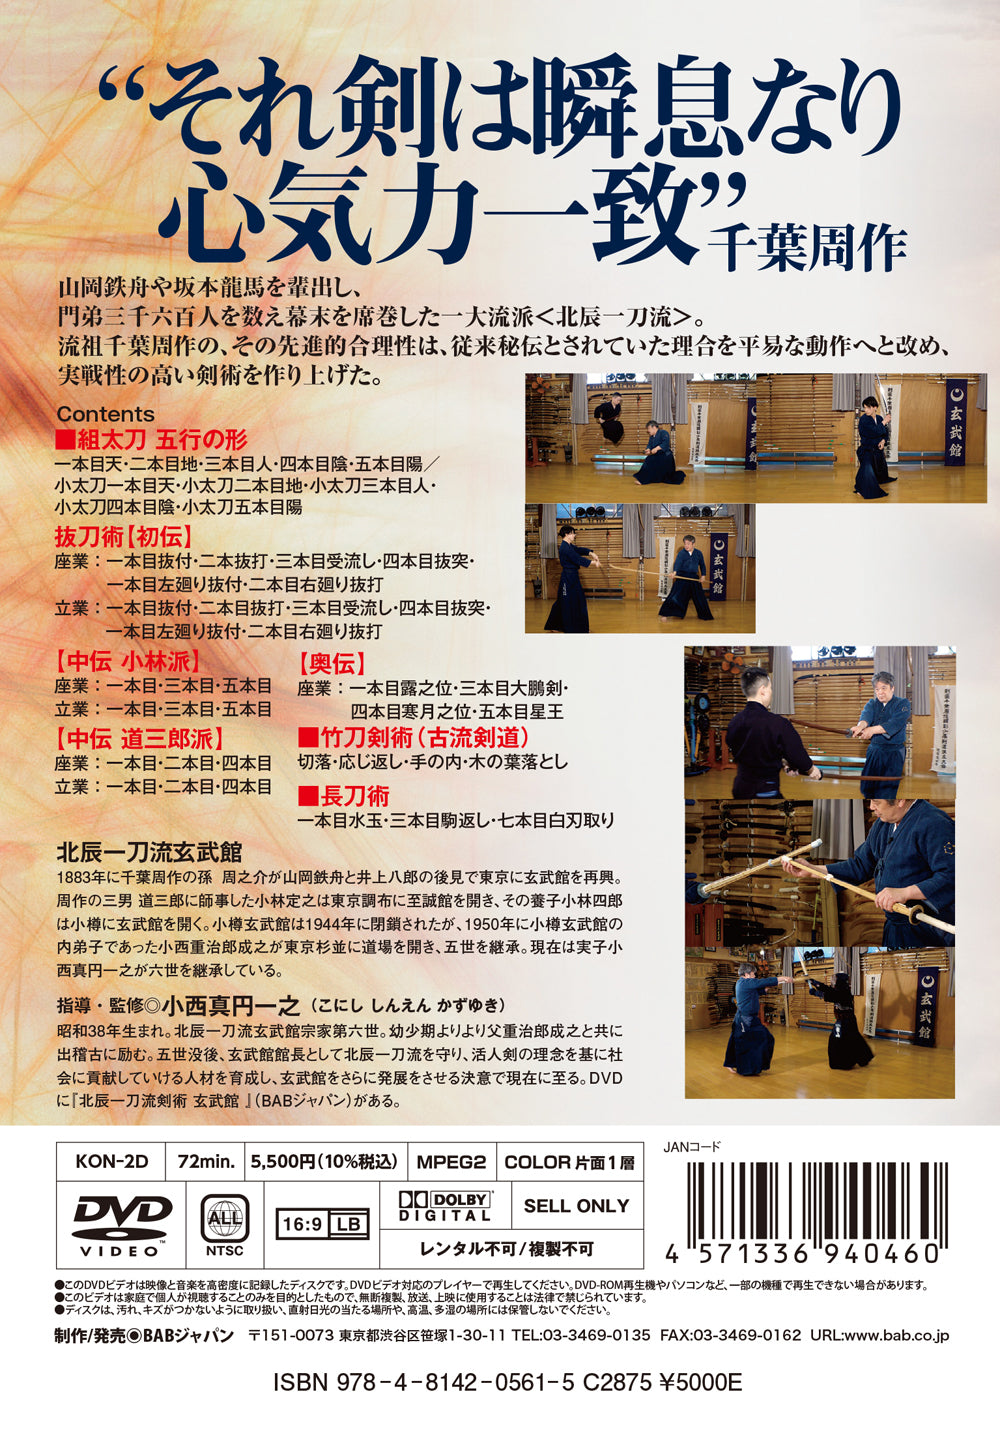 Hokushin Itto Ryu Kenjutsu Genbukan Vol 2 DVD by Shigejiro Konishi